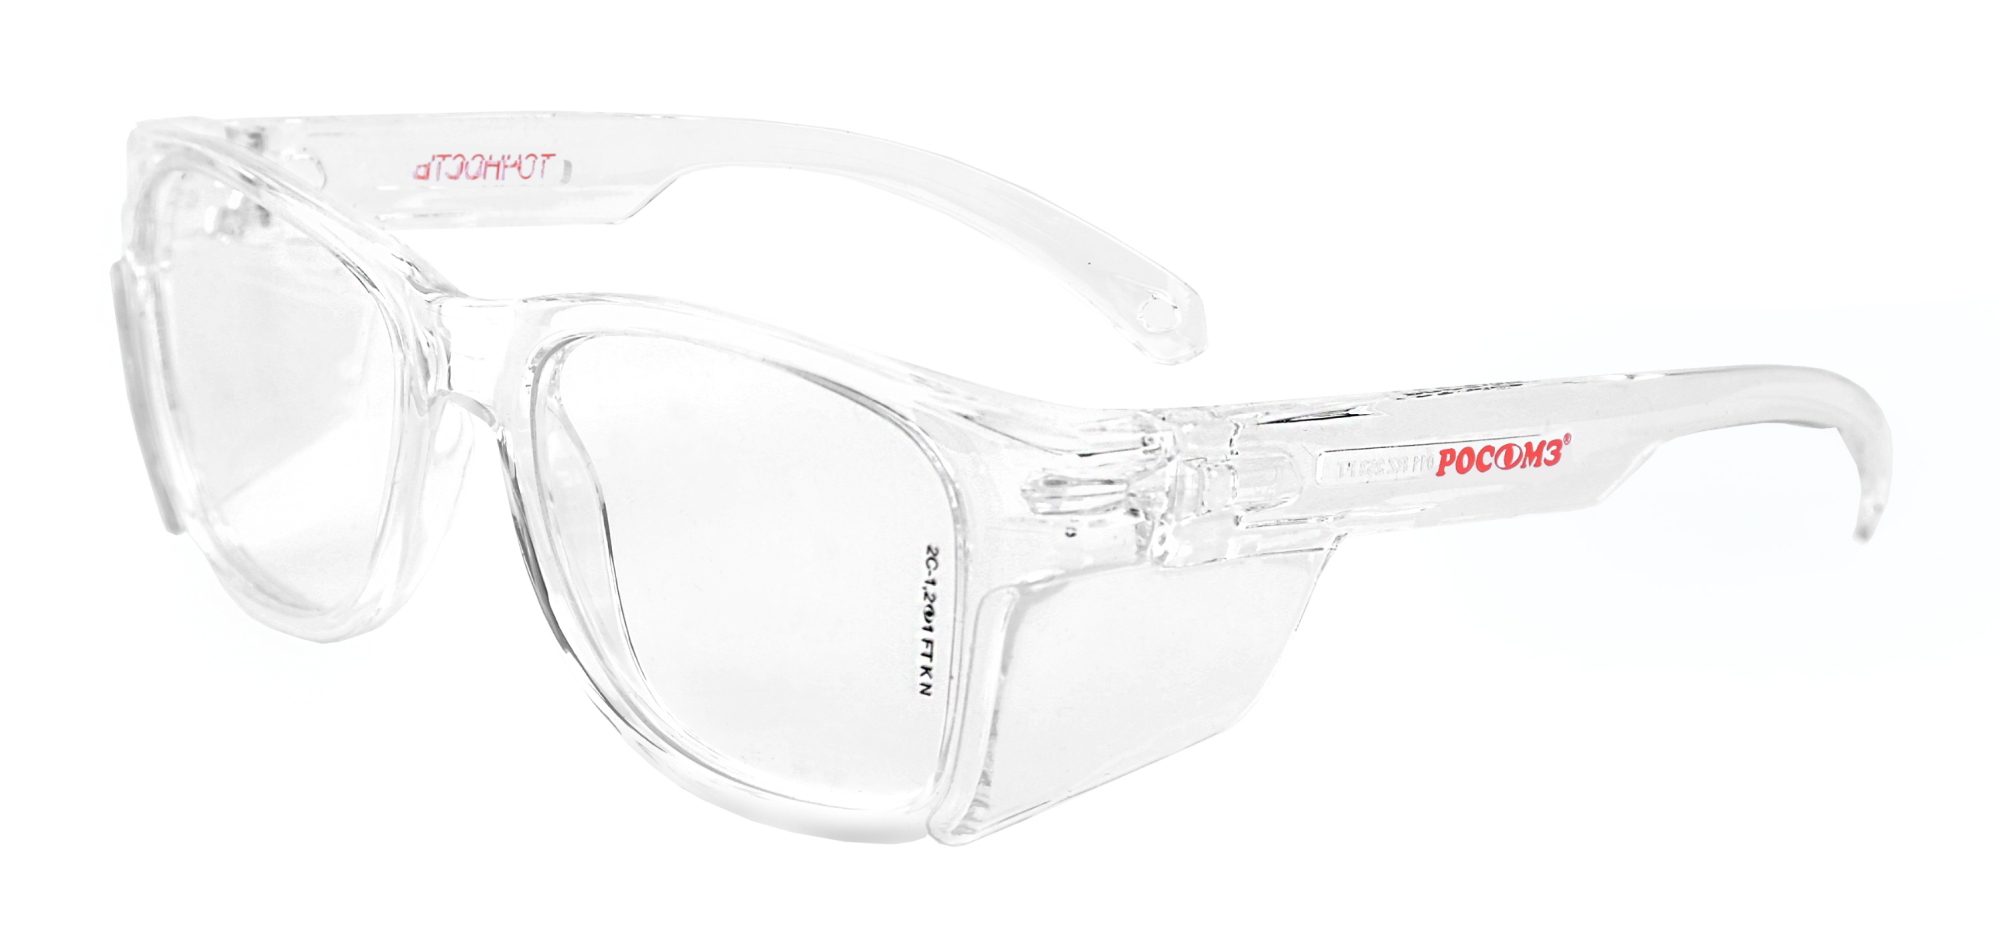 STRONGGLASS BT 9 очки защитные. Очки о50 Monaco STRONGGLASS РОСОМЗ/15037. Очки защитные открытые о87 Arctic (Арктик) STRONGGLASS (18727). Очки СОМЗ-80 Зебра.